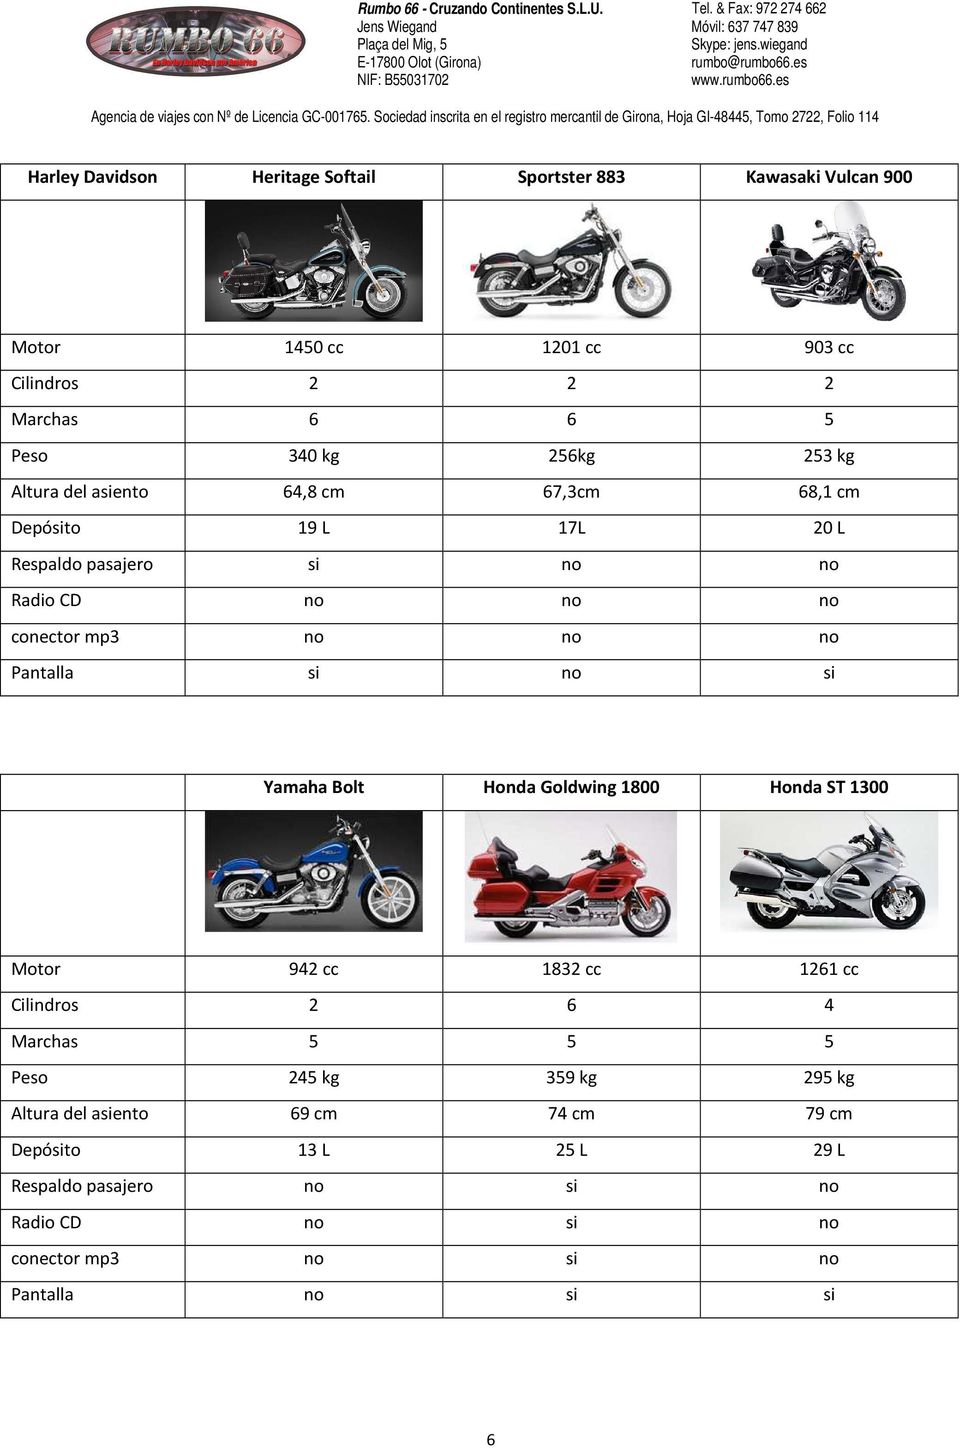 Pantalla si no si Yamaha Bolt Honda Goldwing 1800 Honda ST 1300 Motor 942 cc 1832 cc 1261 cc Cilindros 2 6 4 Marchas 5 5 5 Peso 245 kg 359 kg